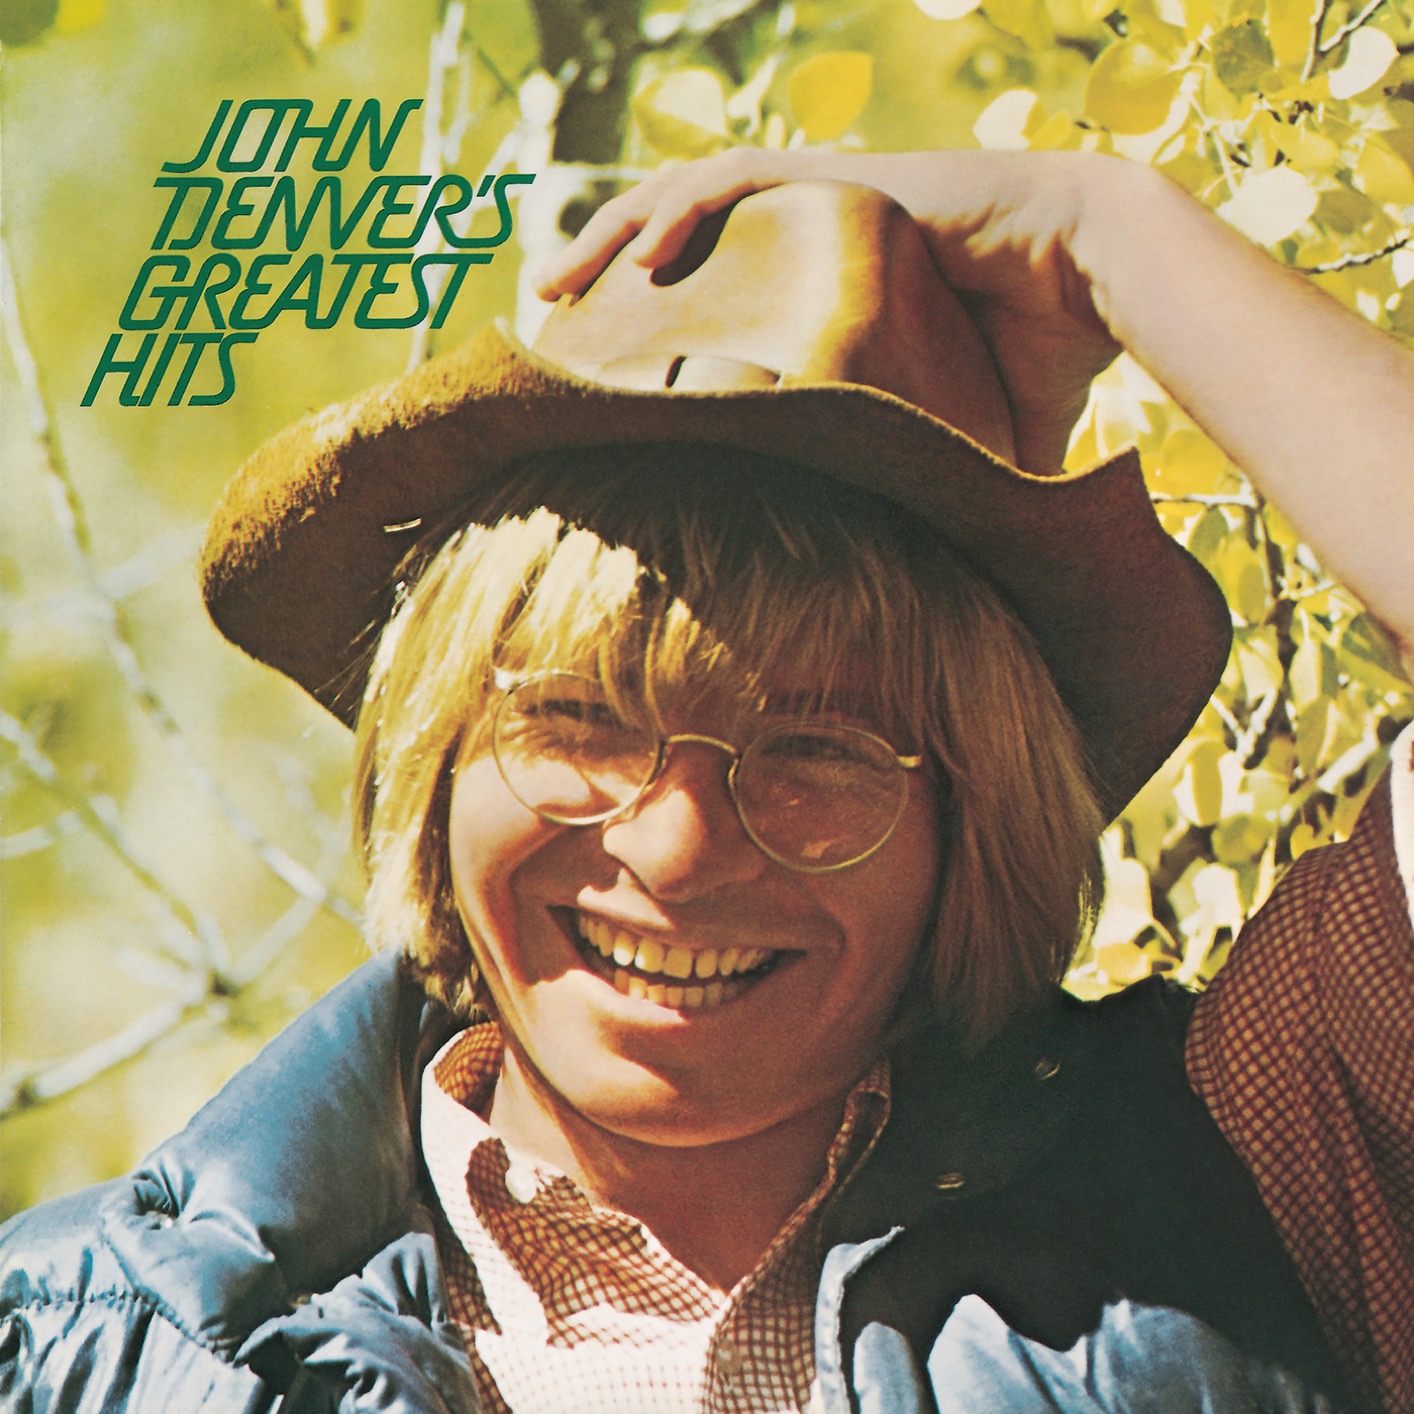 John Denver – John Denver’s Greatest Hits (Remastered) (1973/2019) [FLAC 24bit/96kHz]